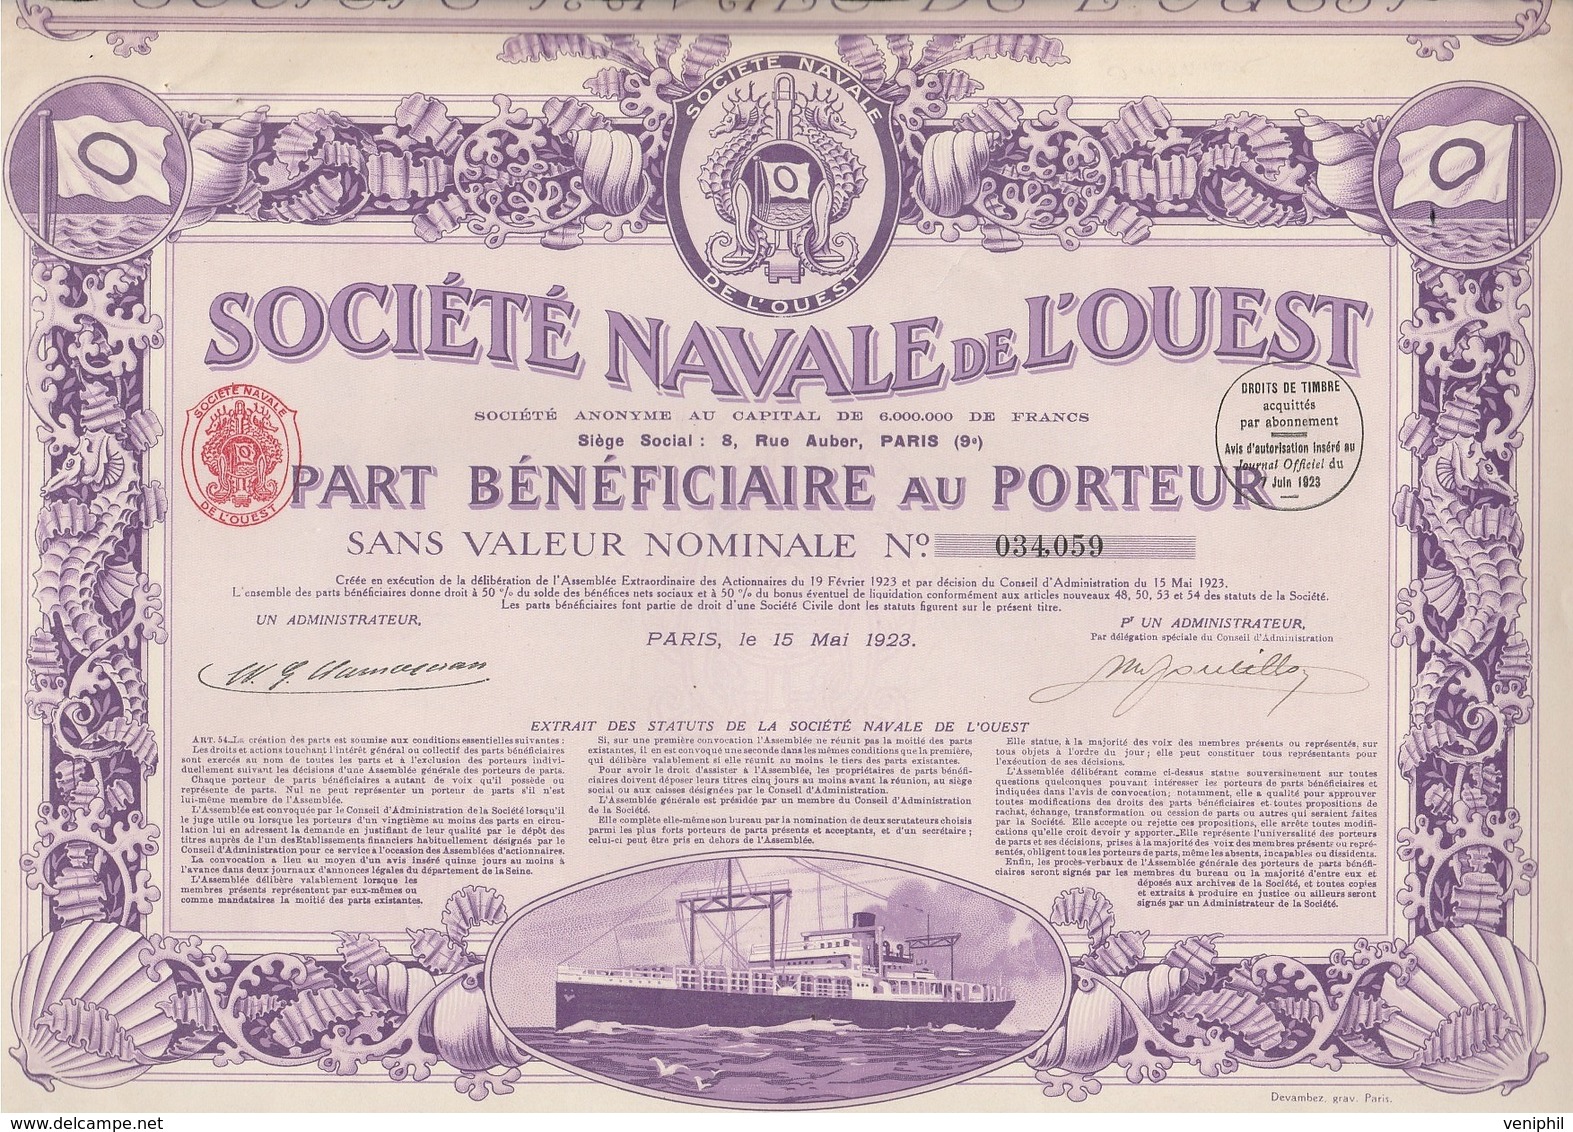 SOCIETE NAVALE DE L'OUEST -PART BENEFICIAIRE- ANNEE 1923 - COULEUR VIOLETTE - Navy